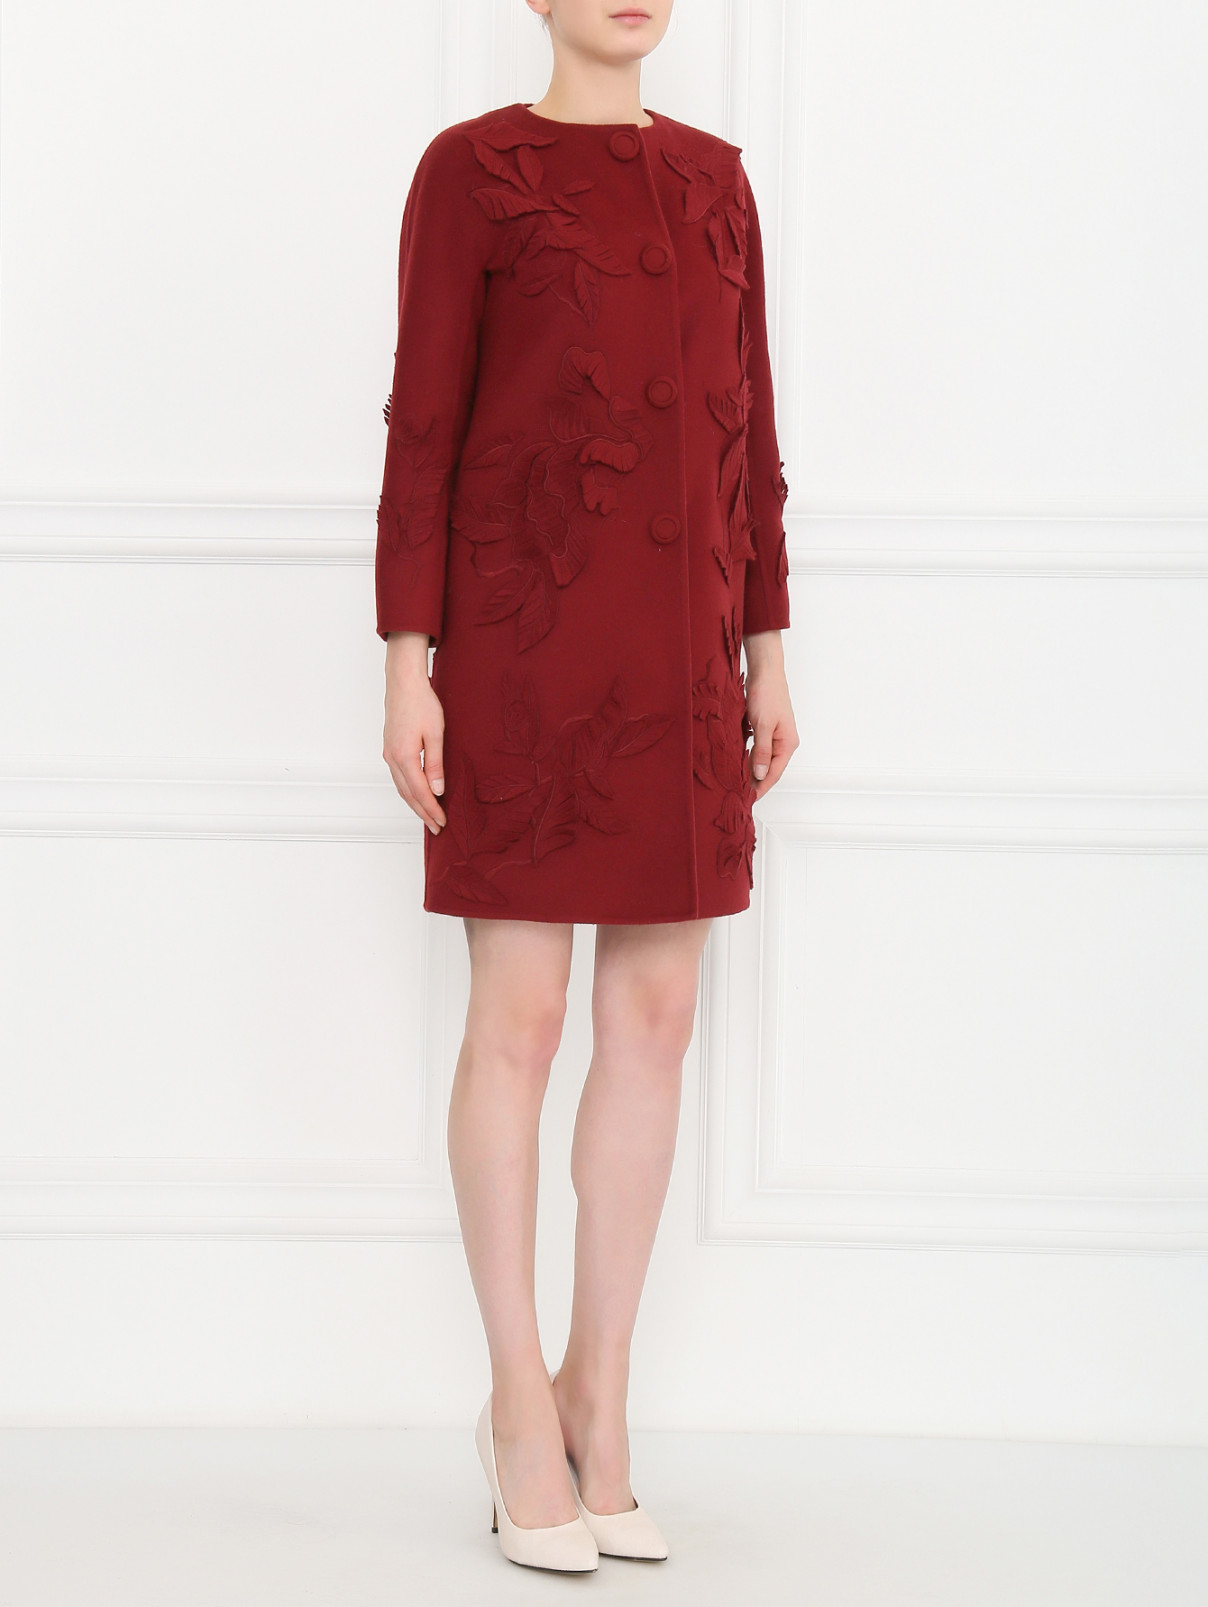 Пальто из шерсти с декором Ermanno Scervino  –  Модель Общий вид  – Цвет:  Красный